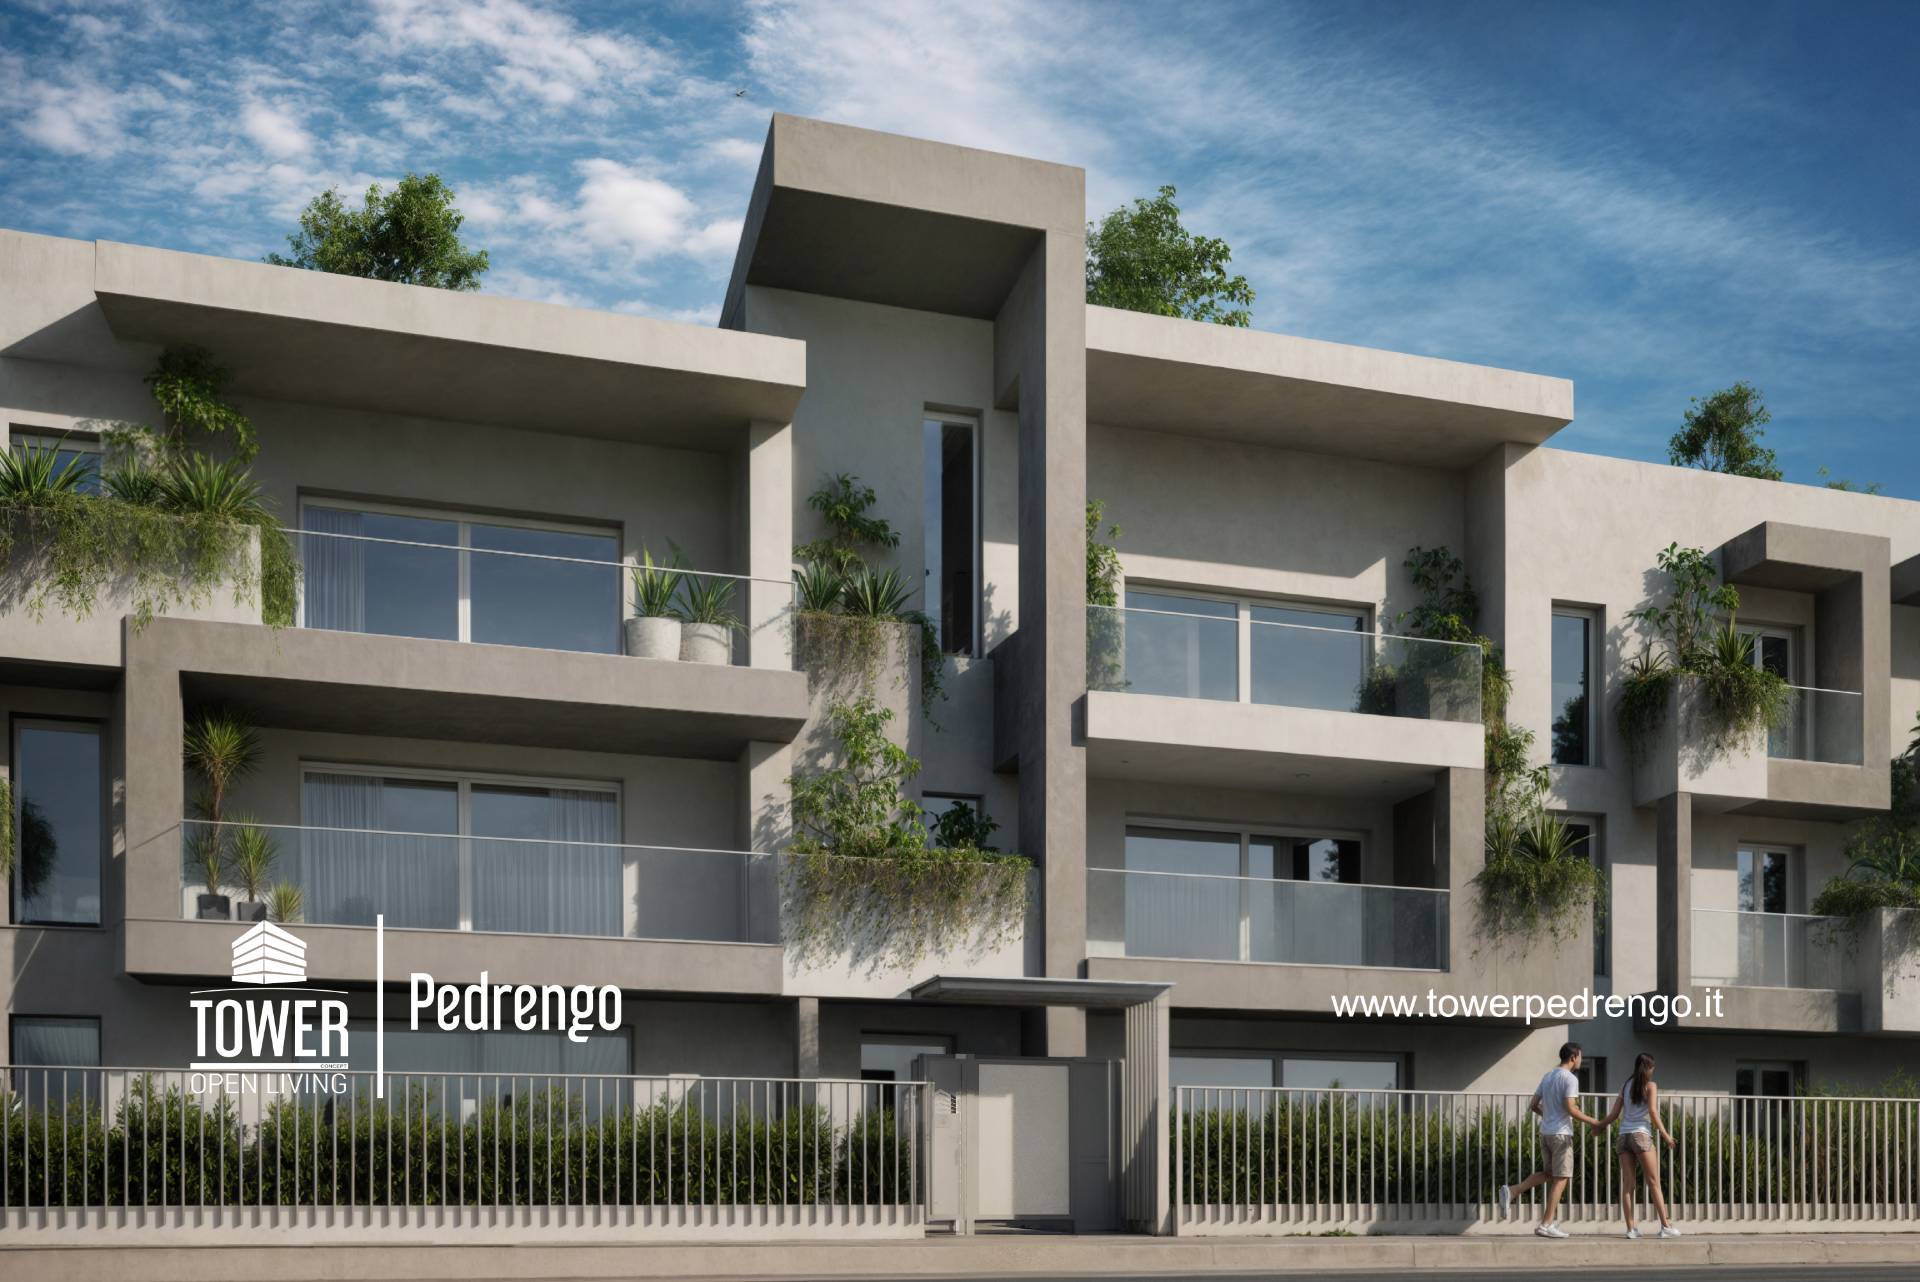 Appartamento in vendita a Pedrengo, 4 locali, prezzo € 349.000 | PortaleAgenzieImmobiliari.it